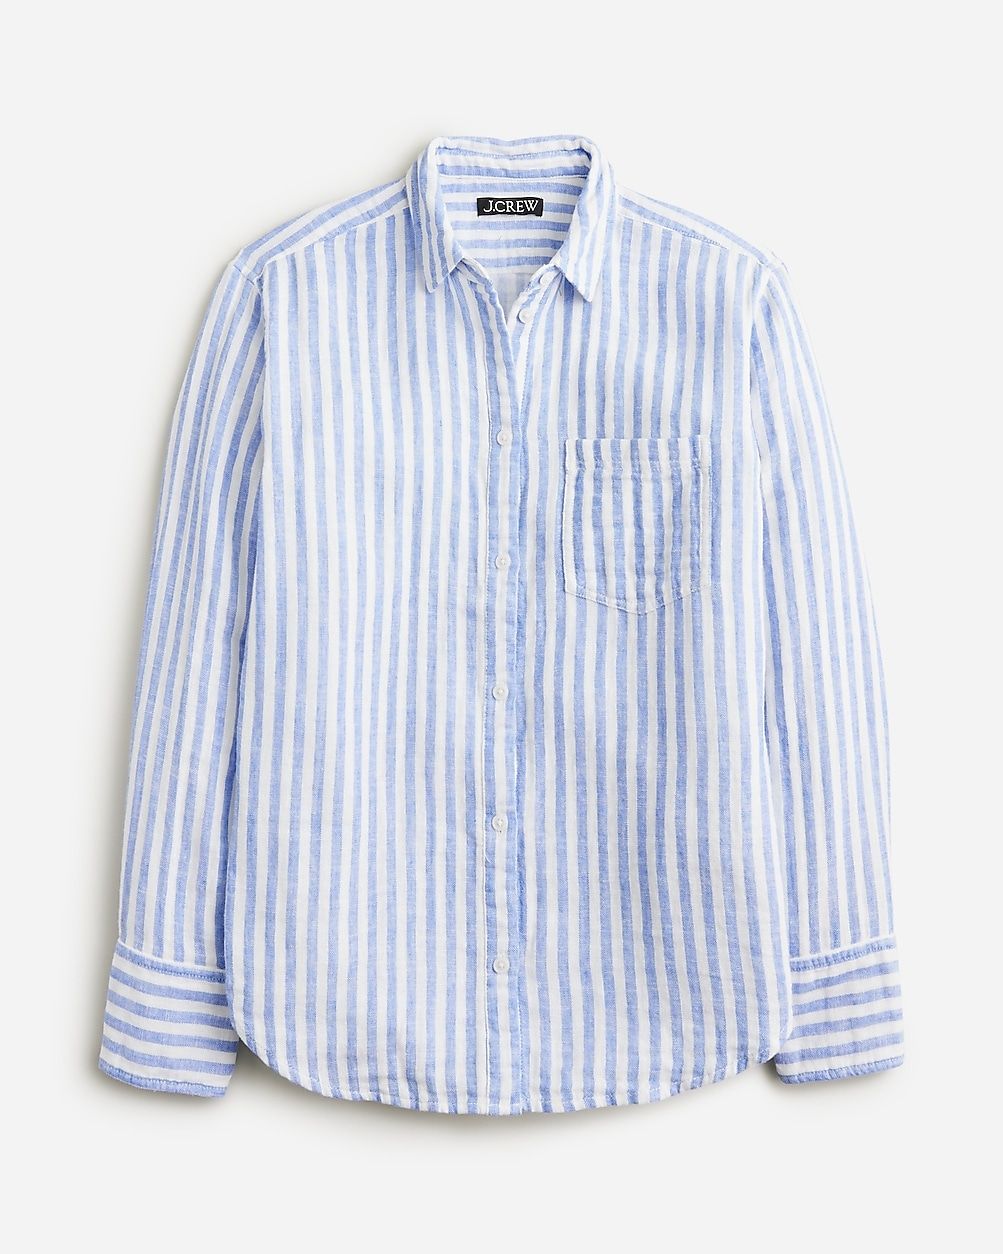 Garçon classic shirt in striped cotton-linen blend gauze | J.Crew US